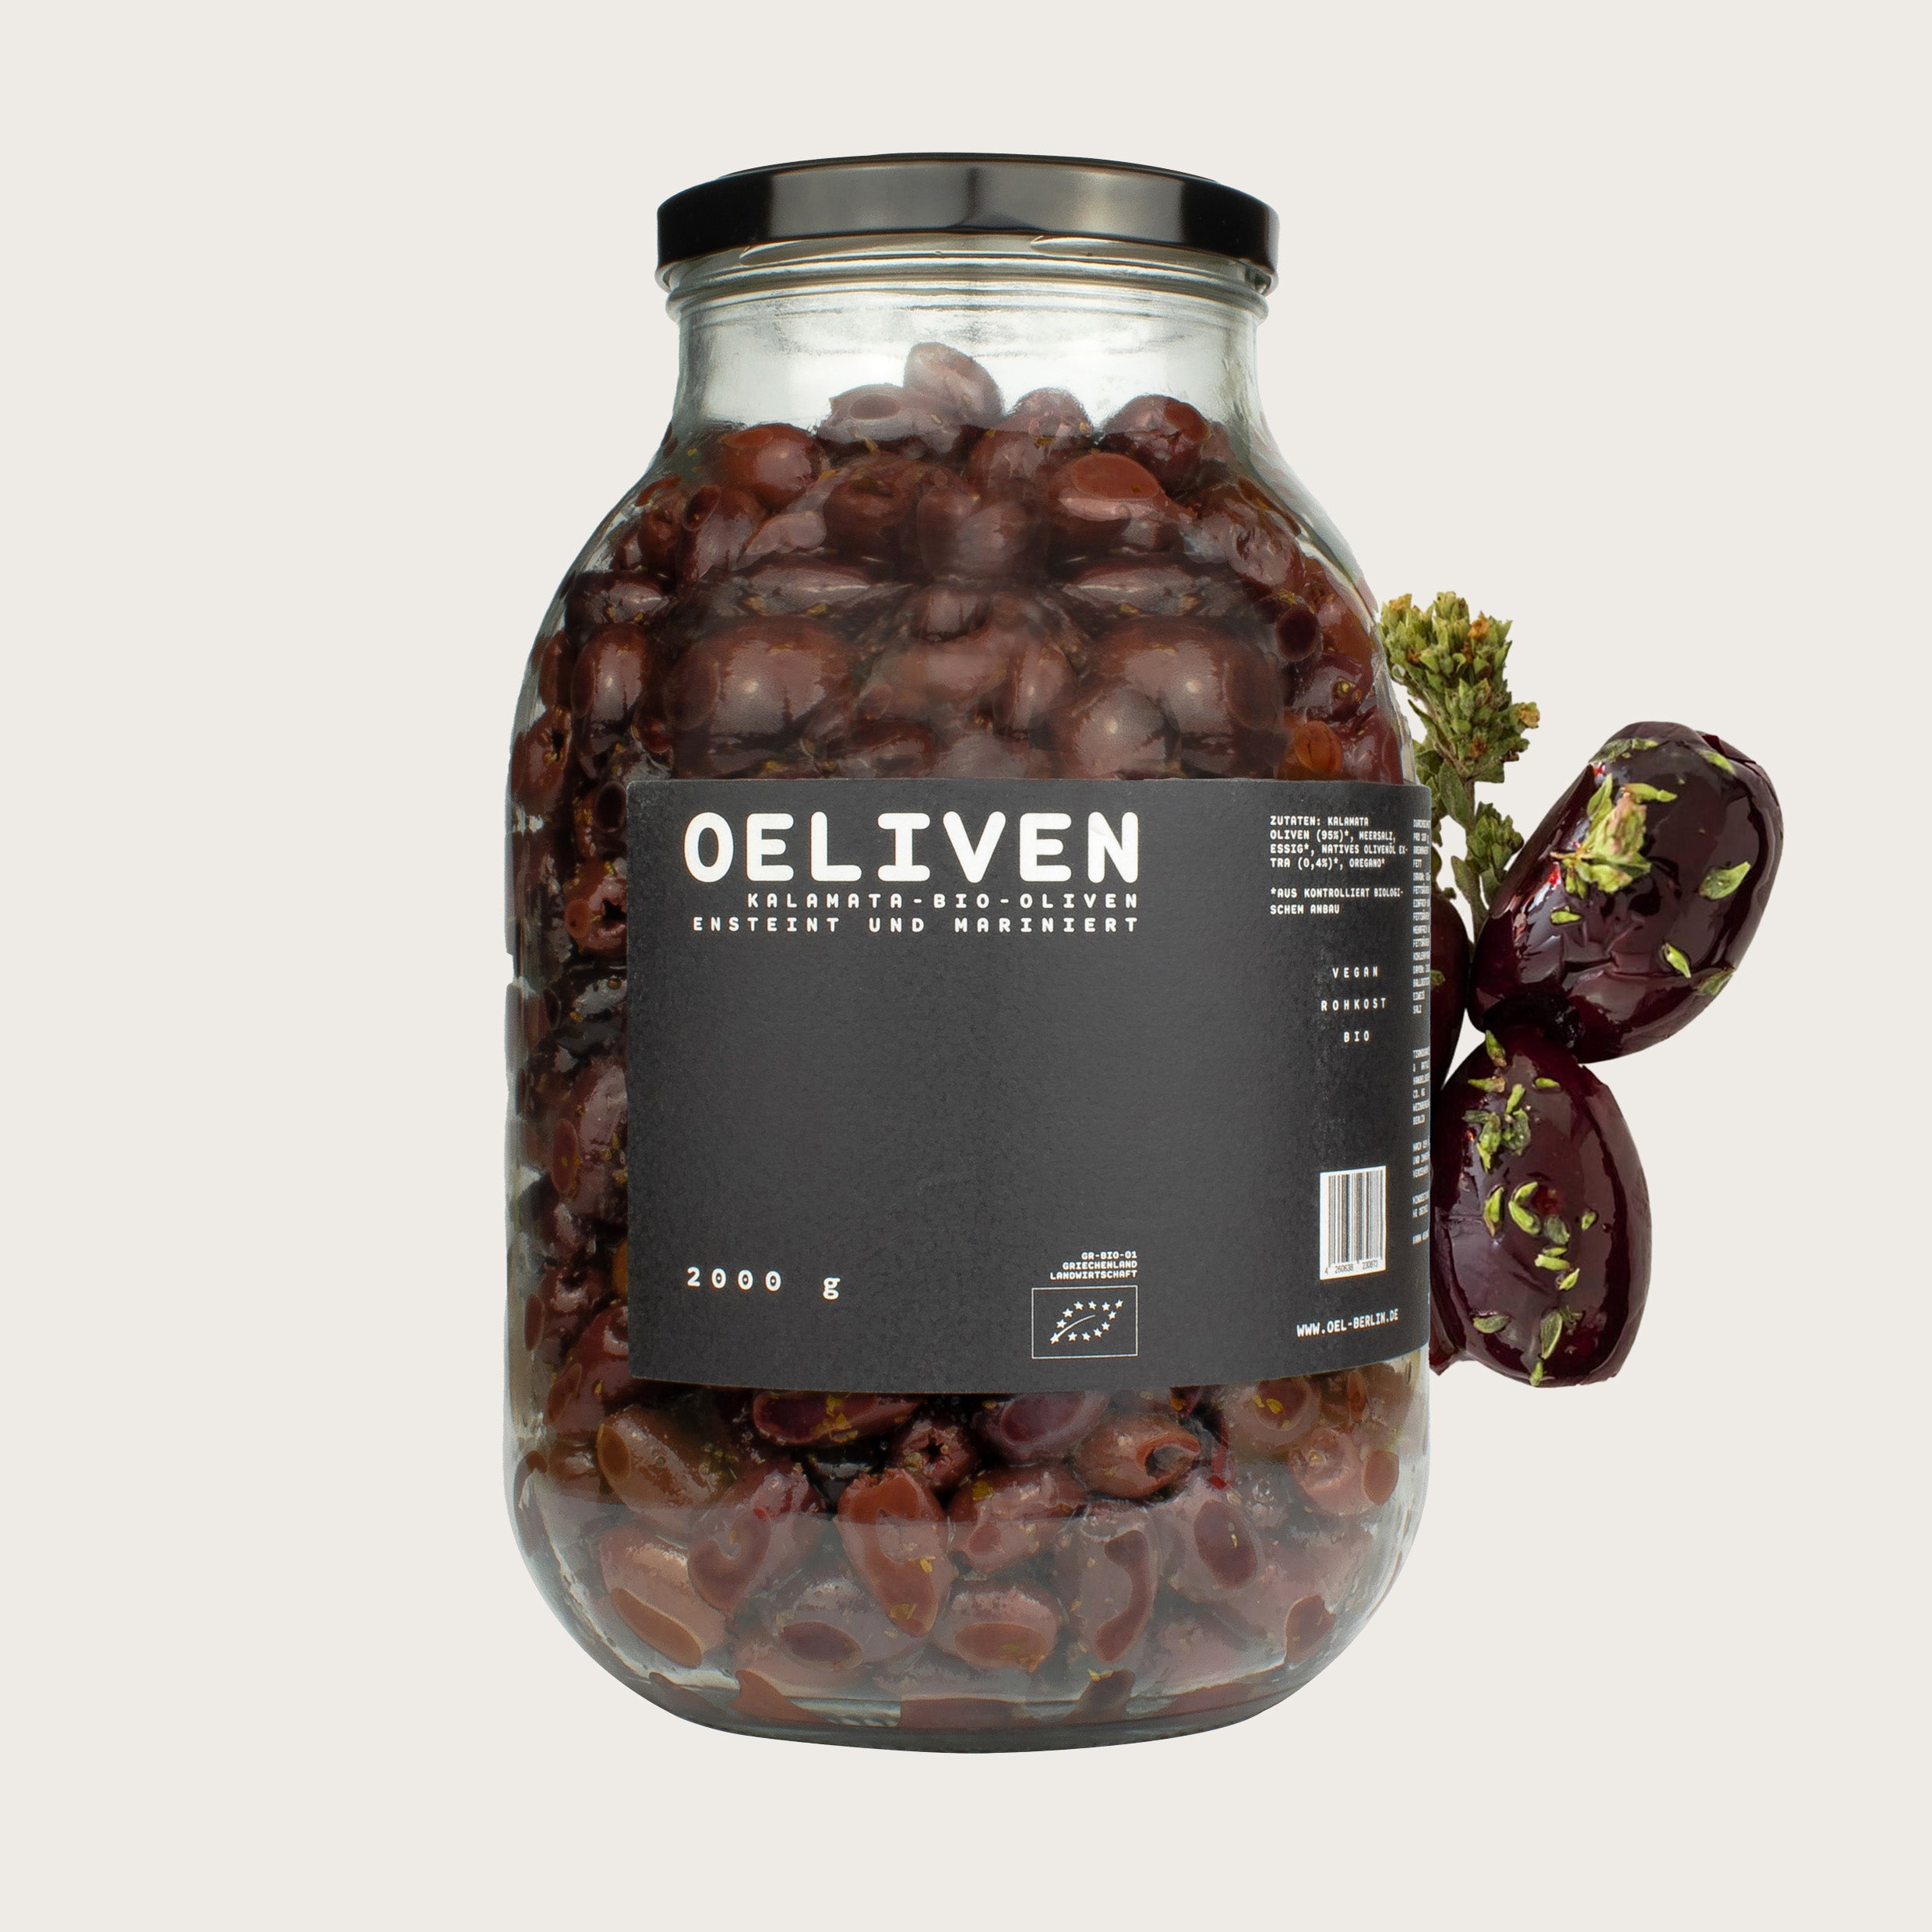 OELiven Kalamata 2,000 g - Organic Kalamata olives with herbs